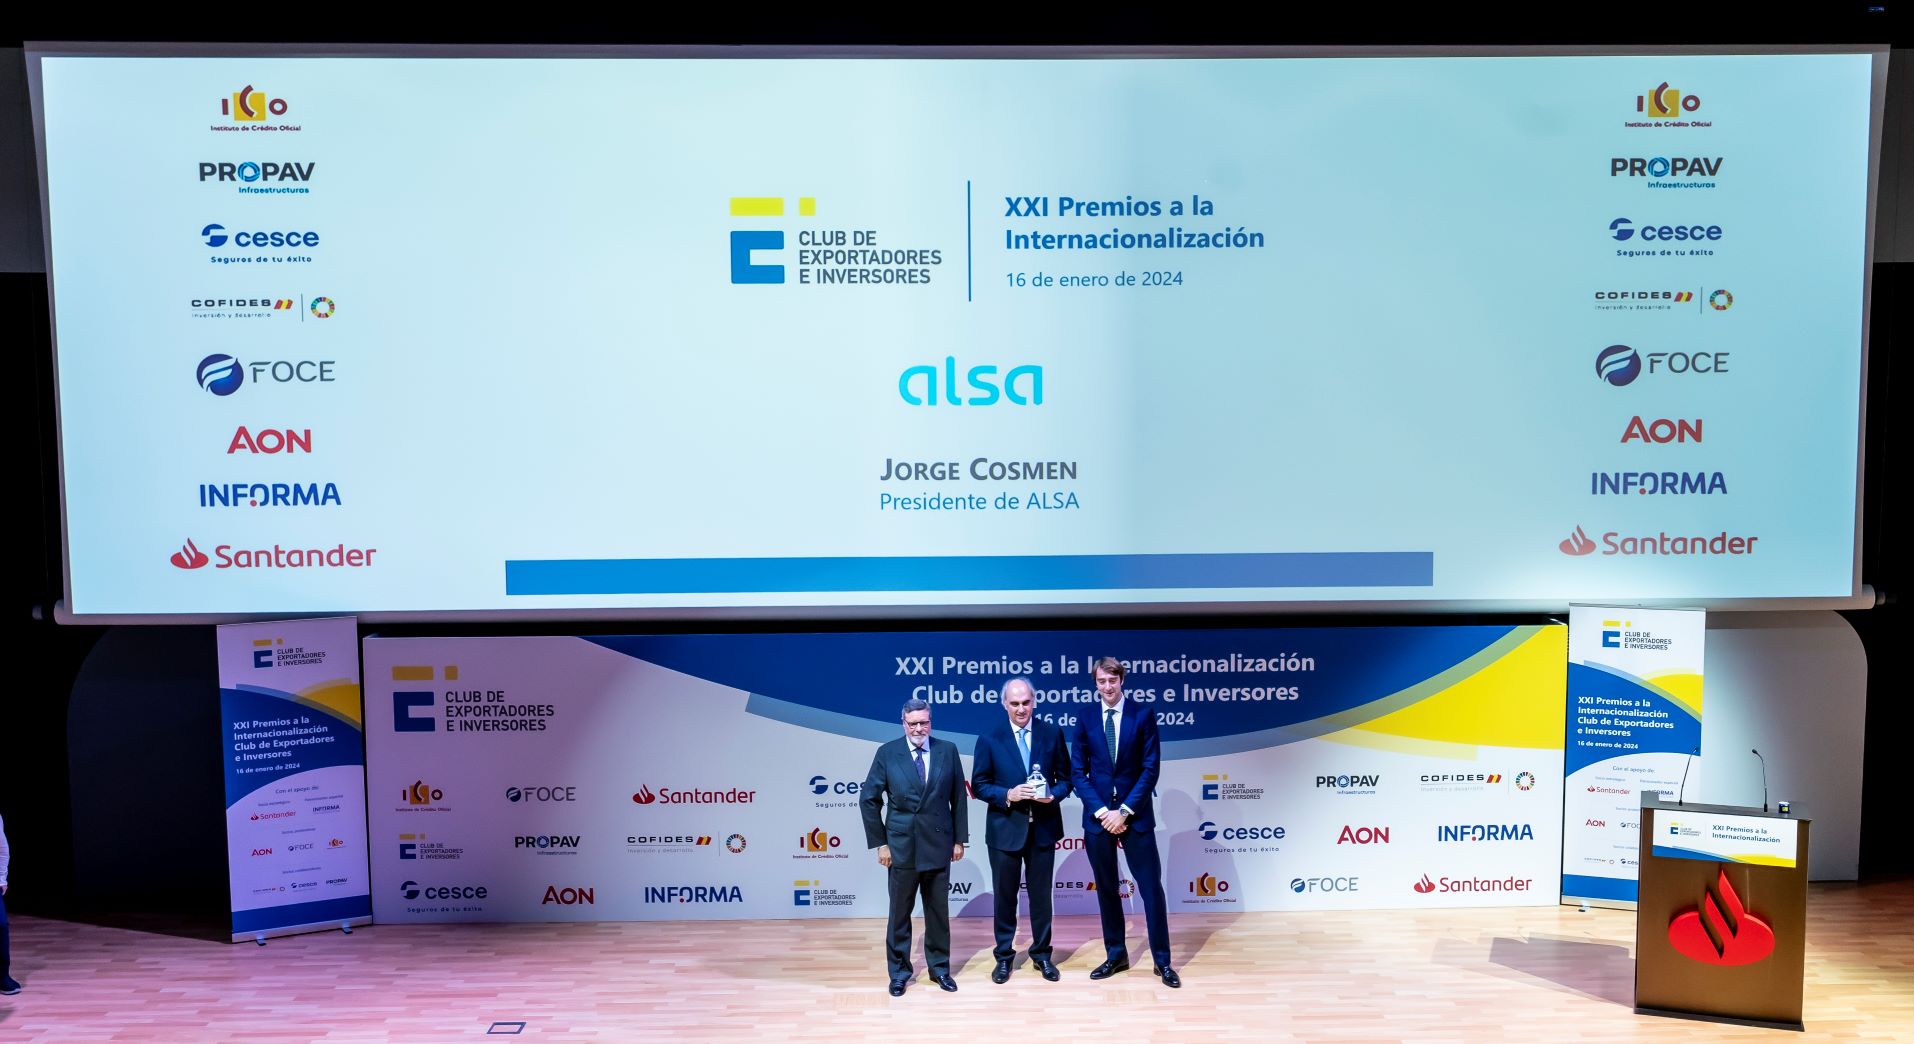 Alsa award event